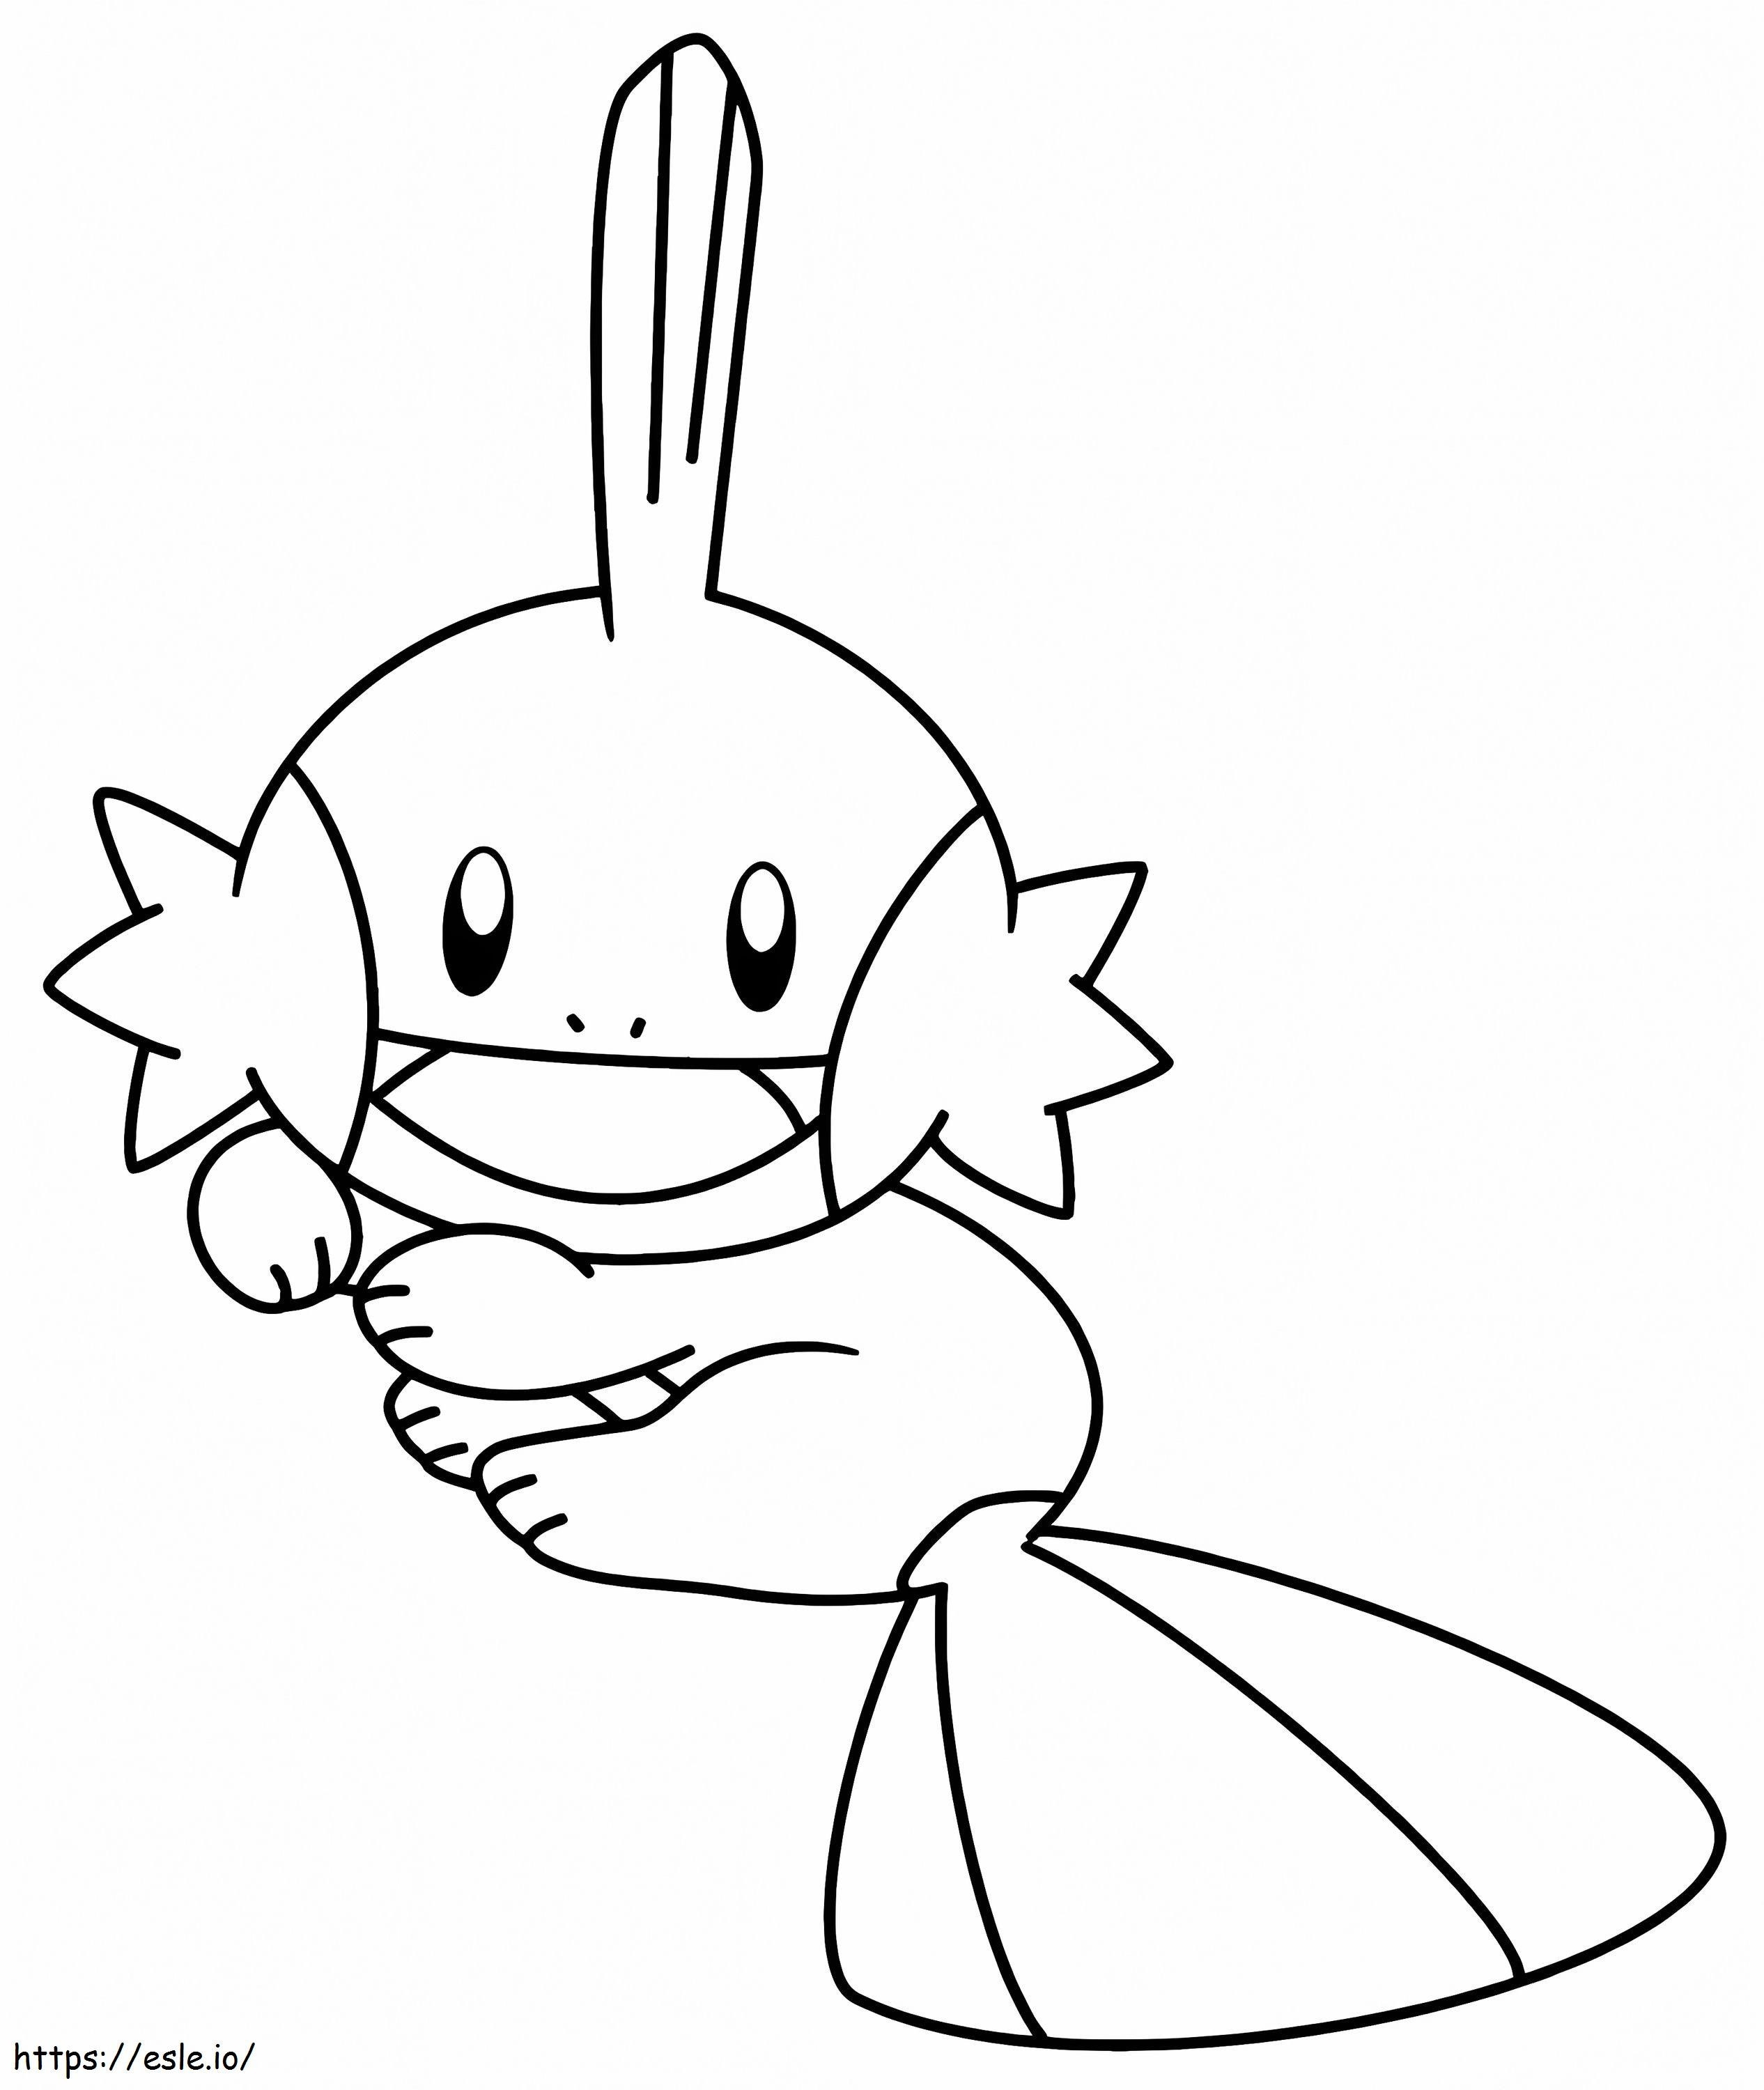 Adorável Pokémon Mudkip para colorir